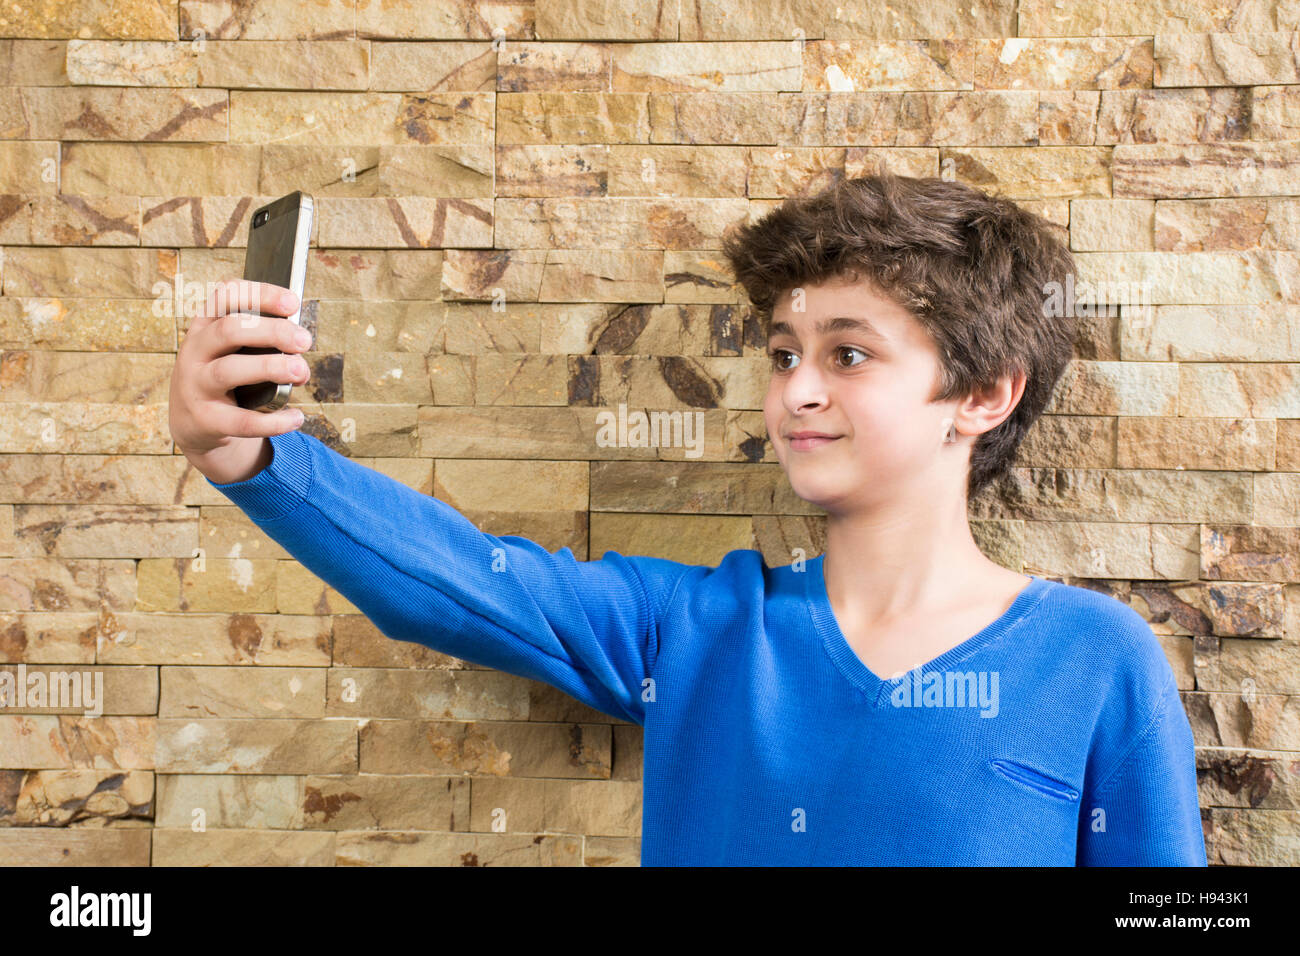 Dieci anni vecchio ragazzo prendendo un selfie foto utilizzando una fotocamera del cellulare Foto Stock